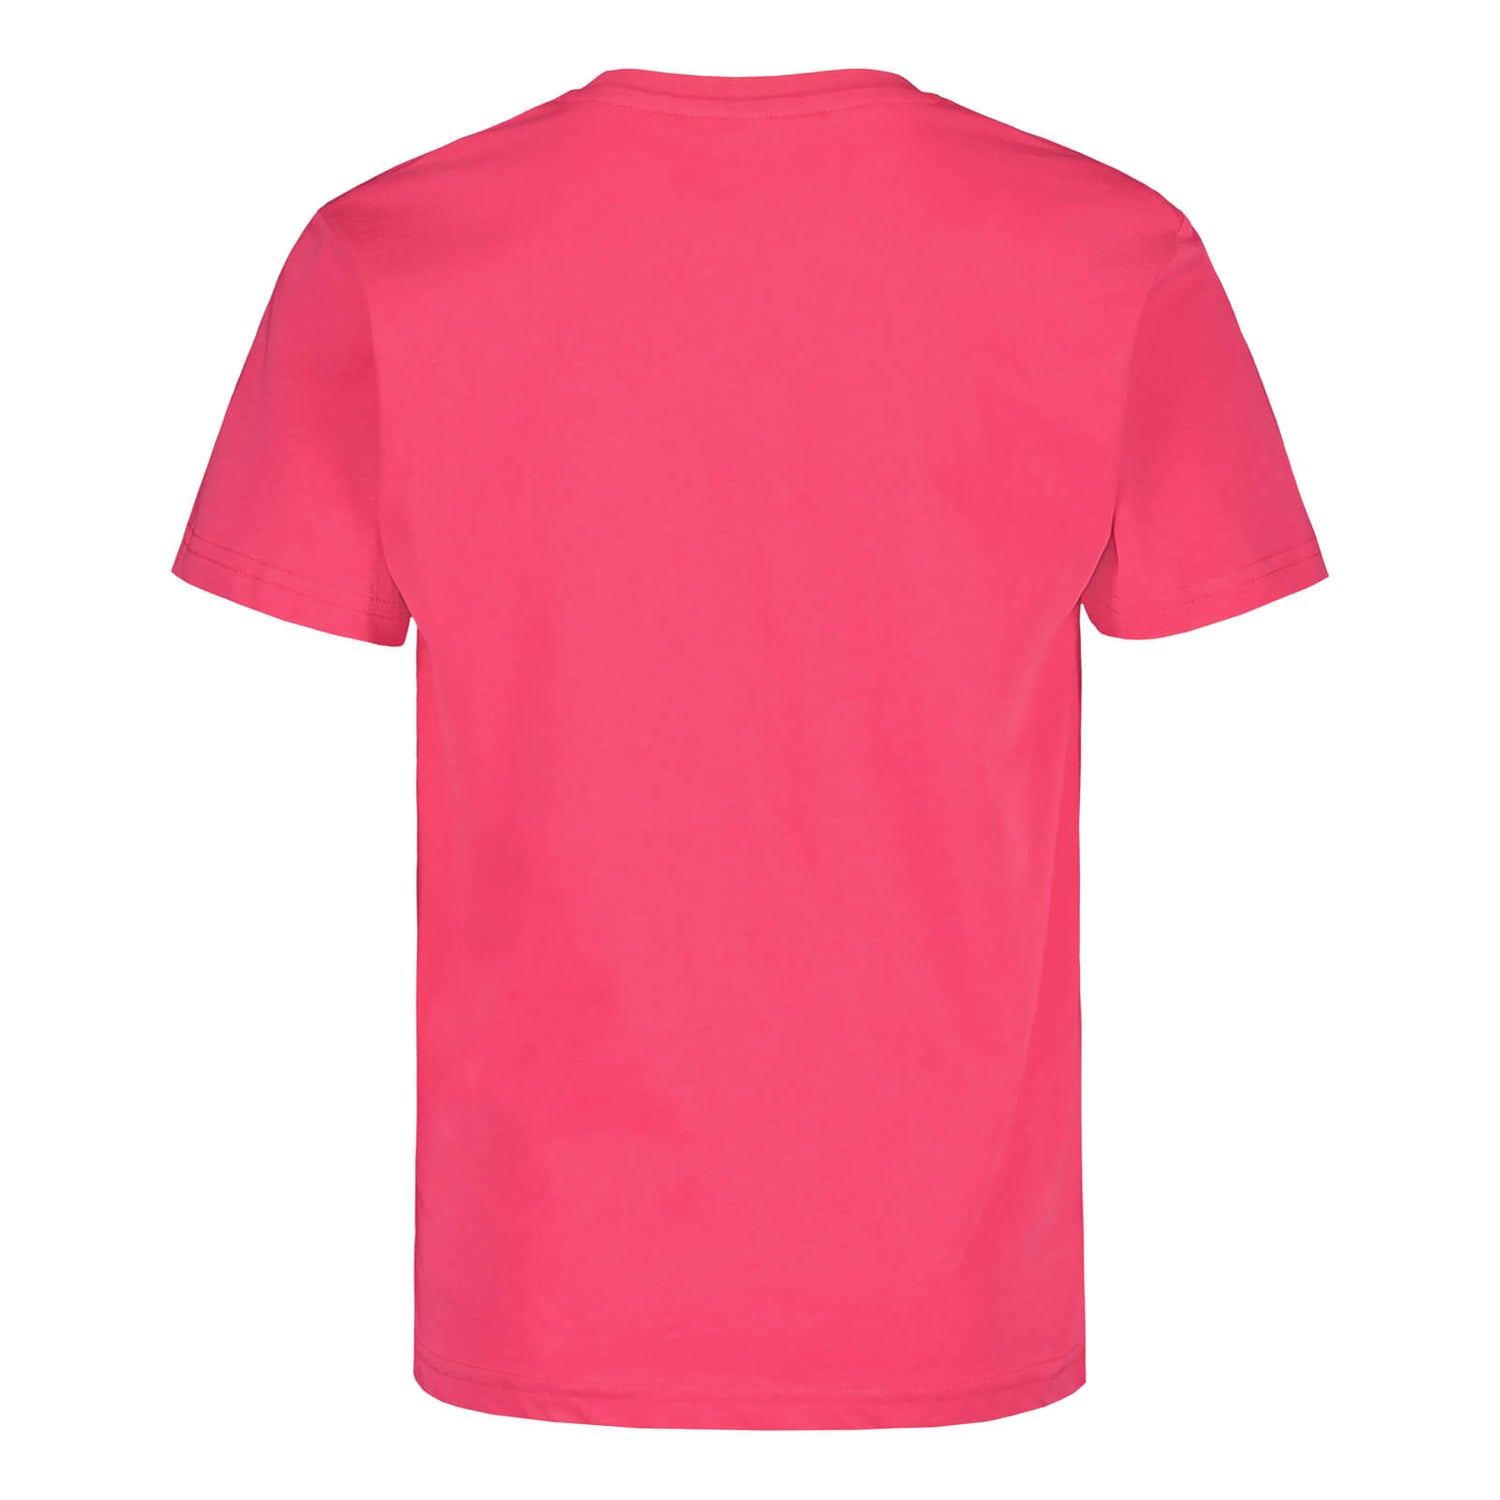 Helmarit 2.0 puuvilla t-paita, Pinkki, Lapset